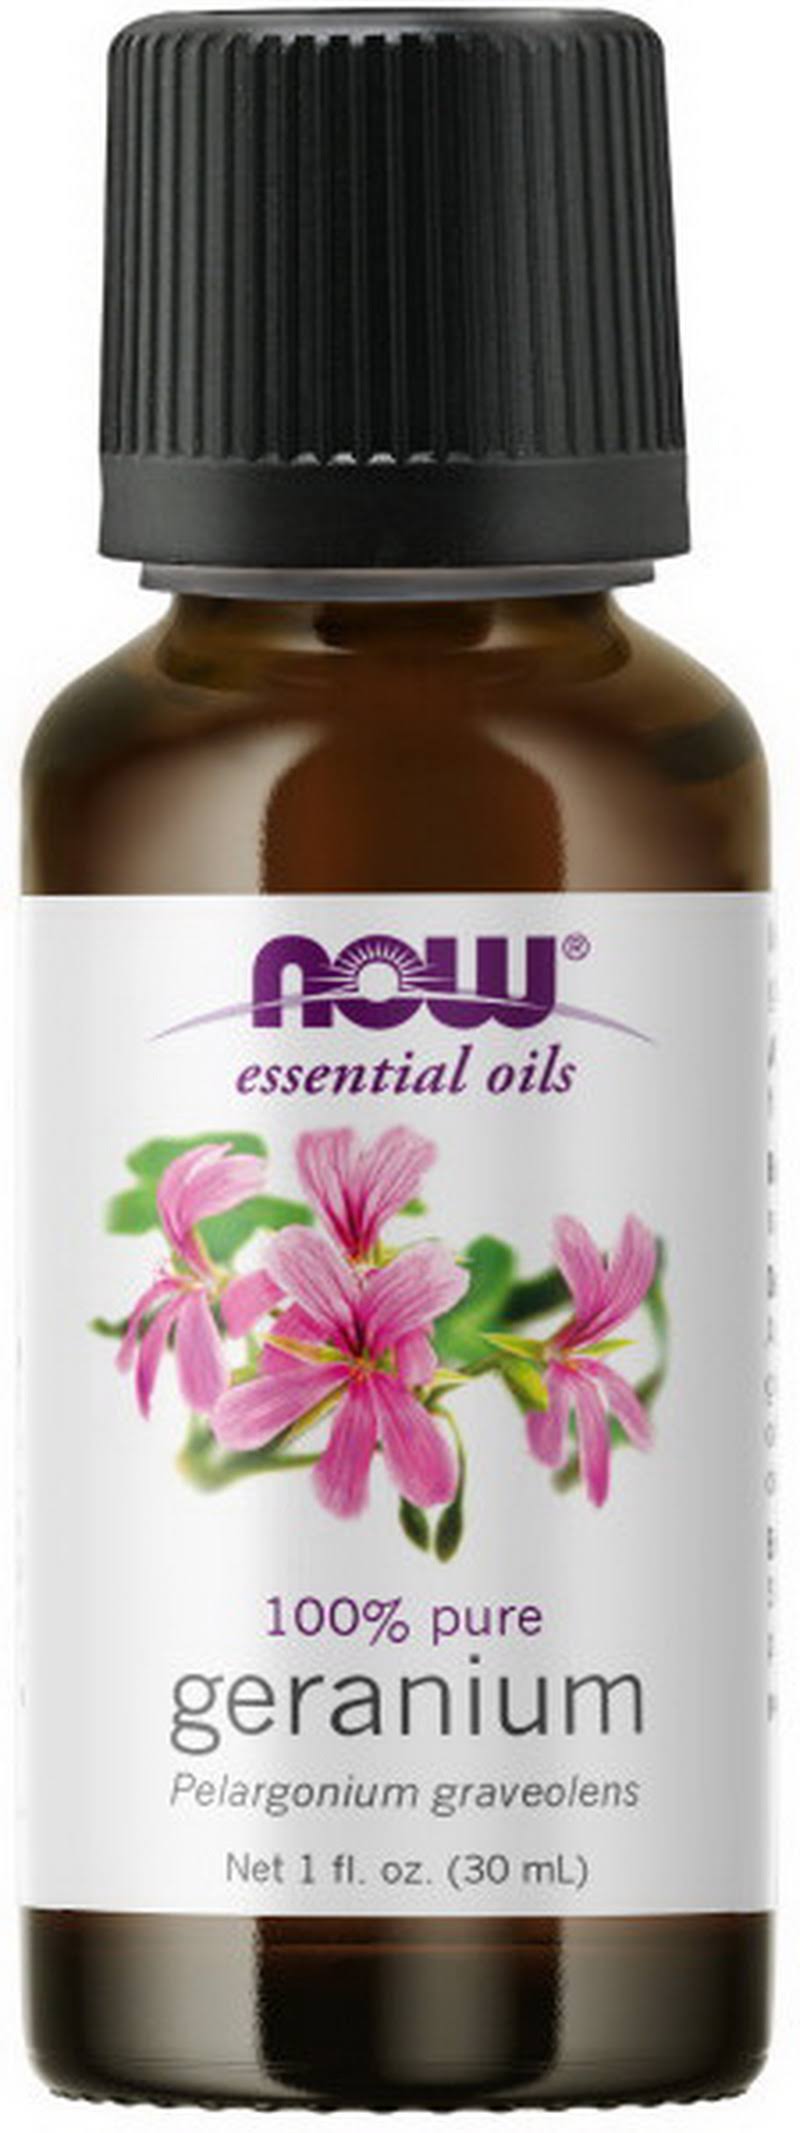 Now Essential Oils - Geranium, 30ml